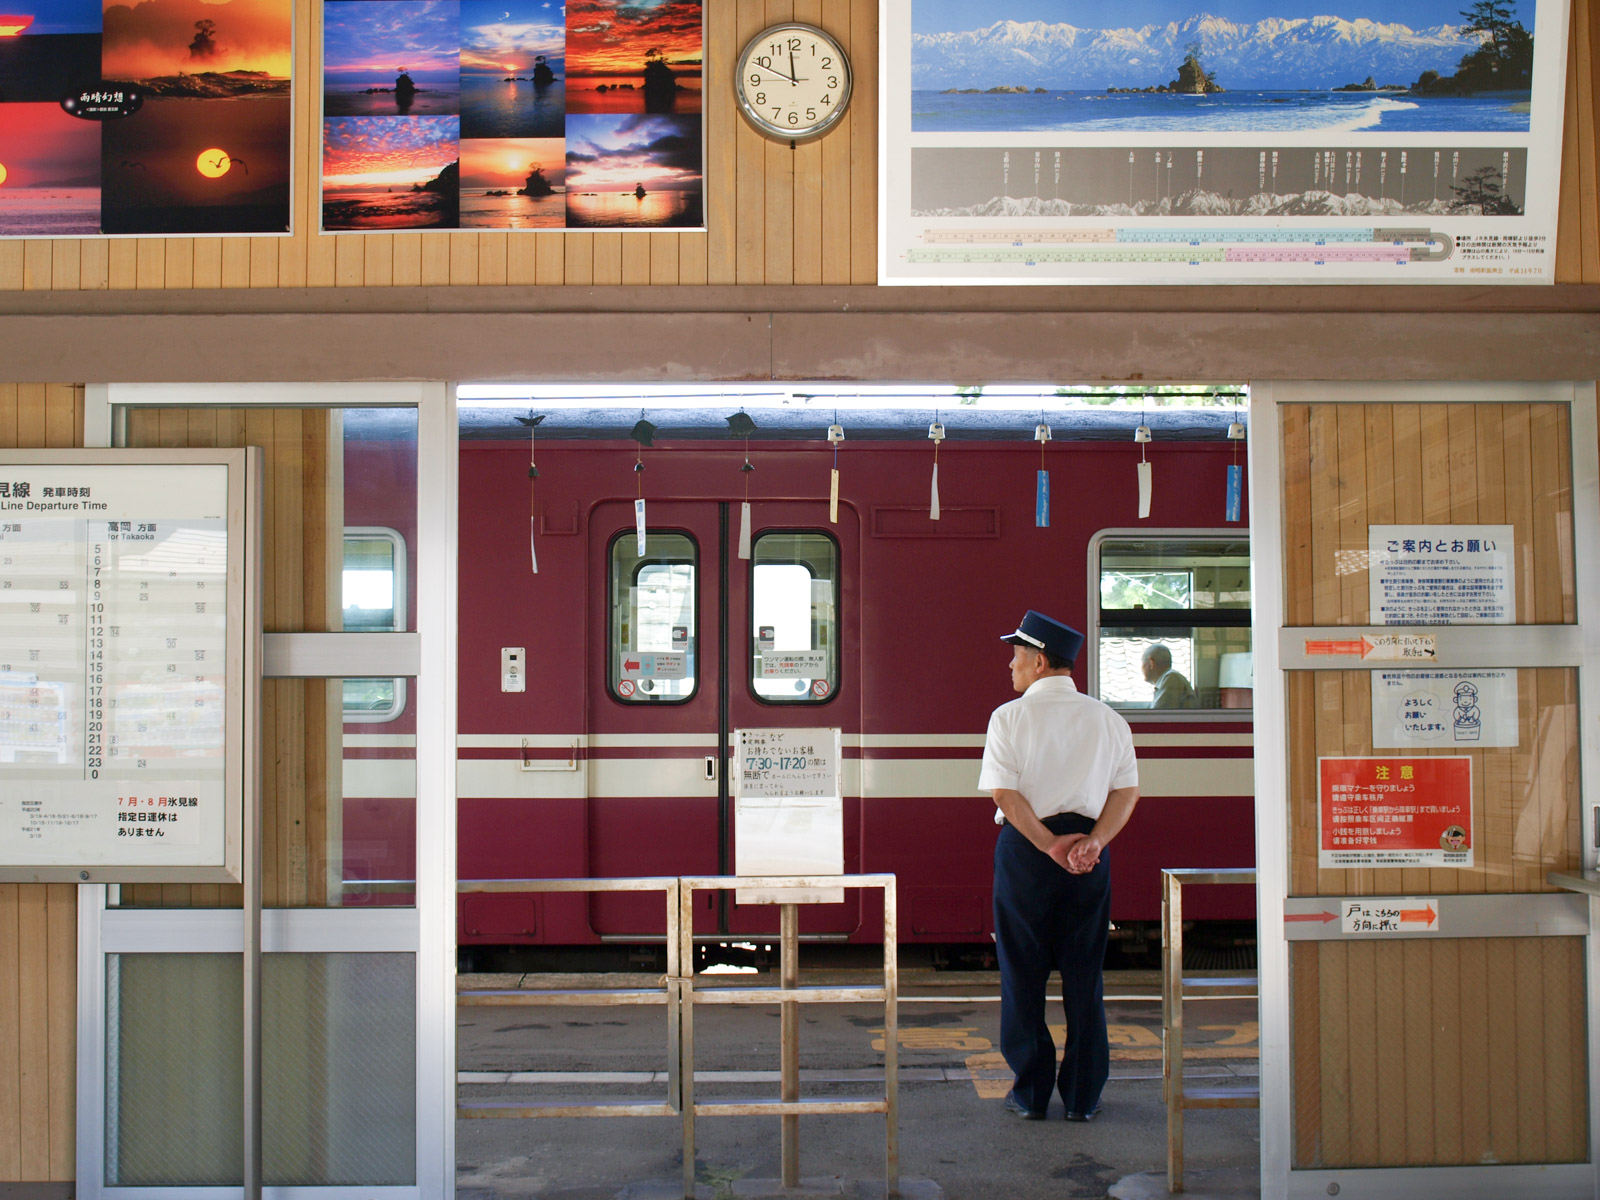 風鈴と雨晴海岸の風景写真が飾られた、2007年・夏の雨晴駅の駅舎（2008年8月）